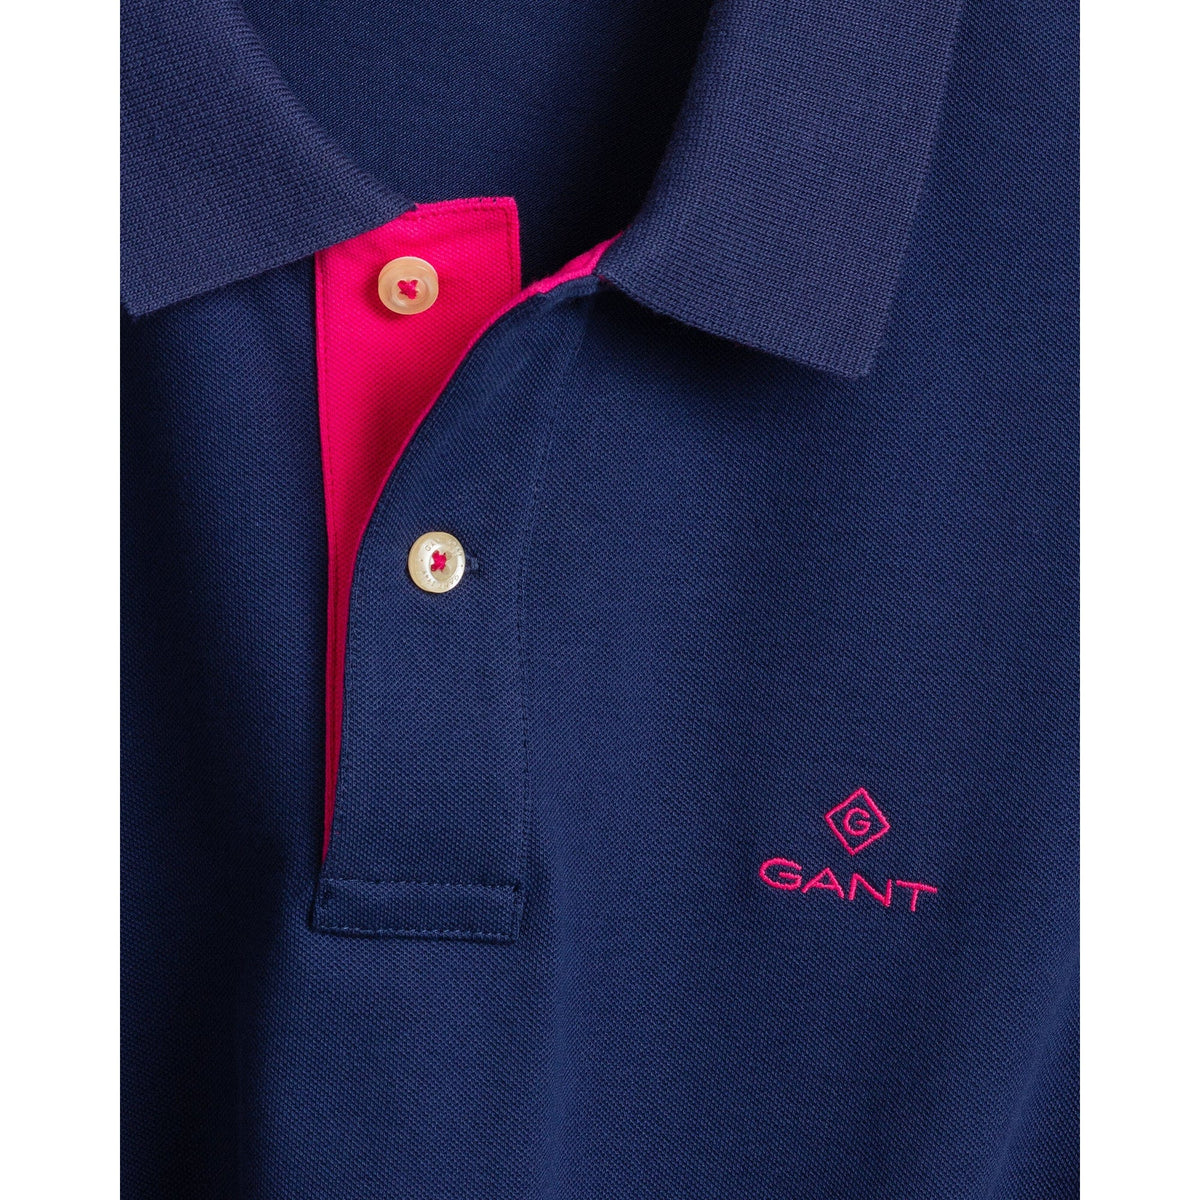 Gant Polo Shirts Contrast Color Piqué Persian Blue Polo Shirt